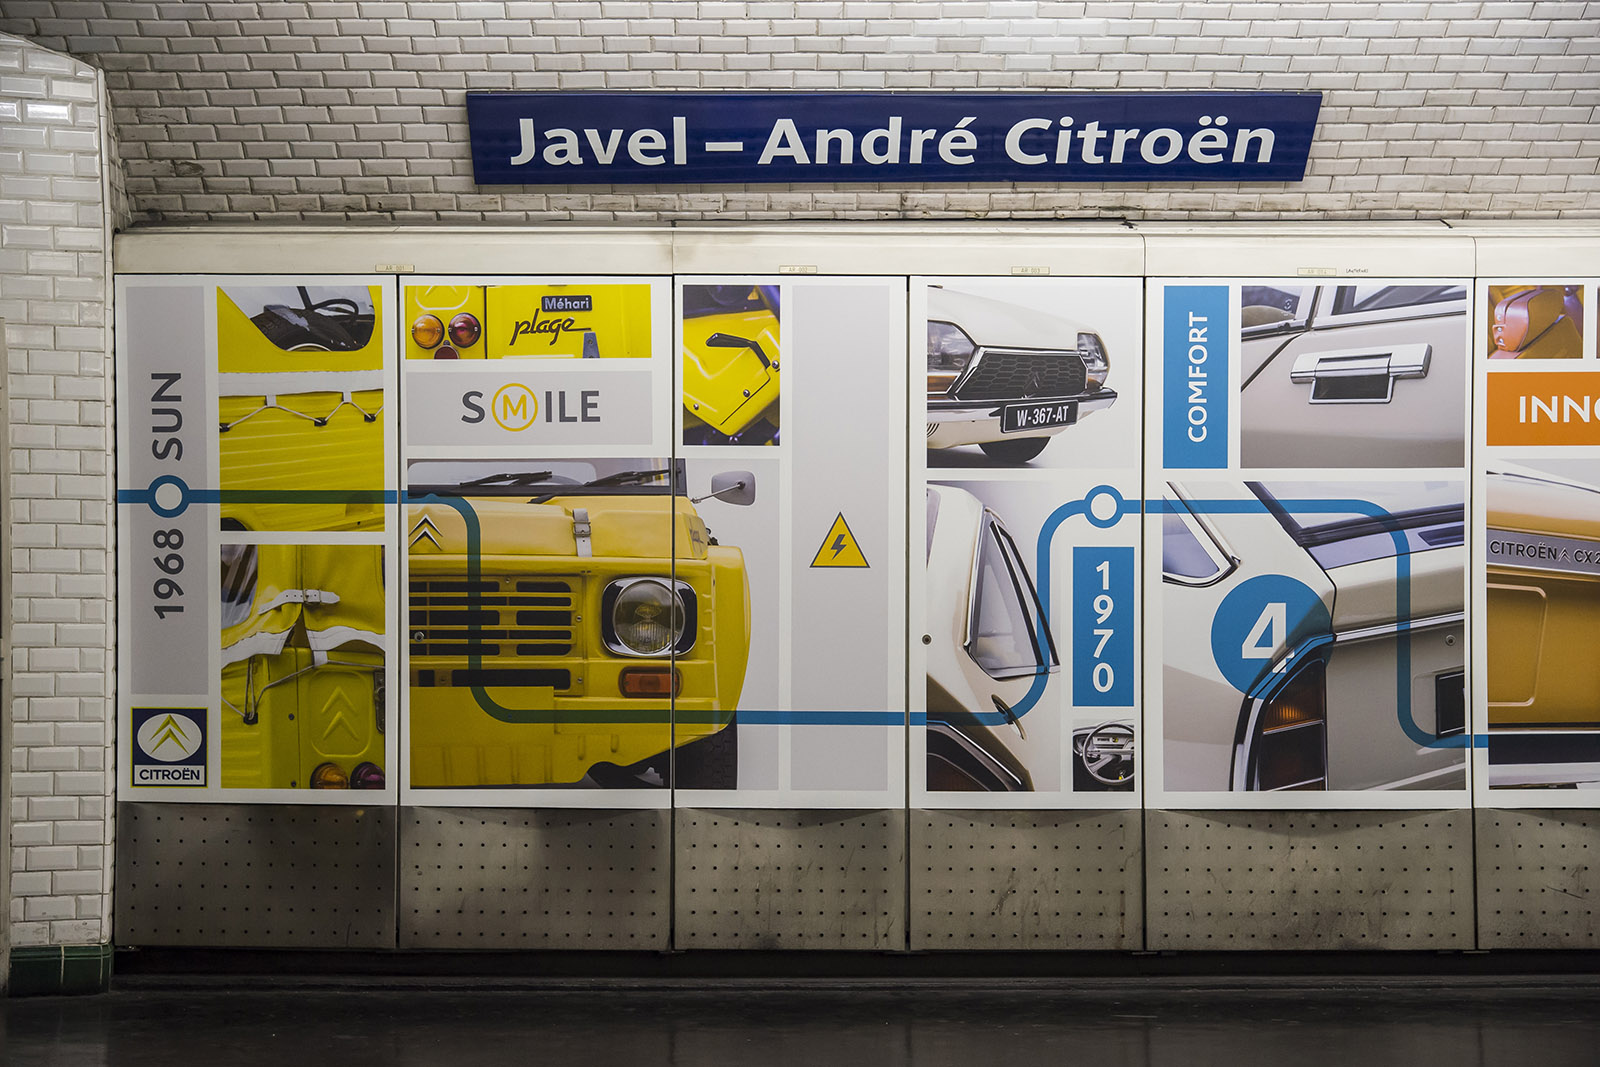 Paris. Station Javel-André Citroën